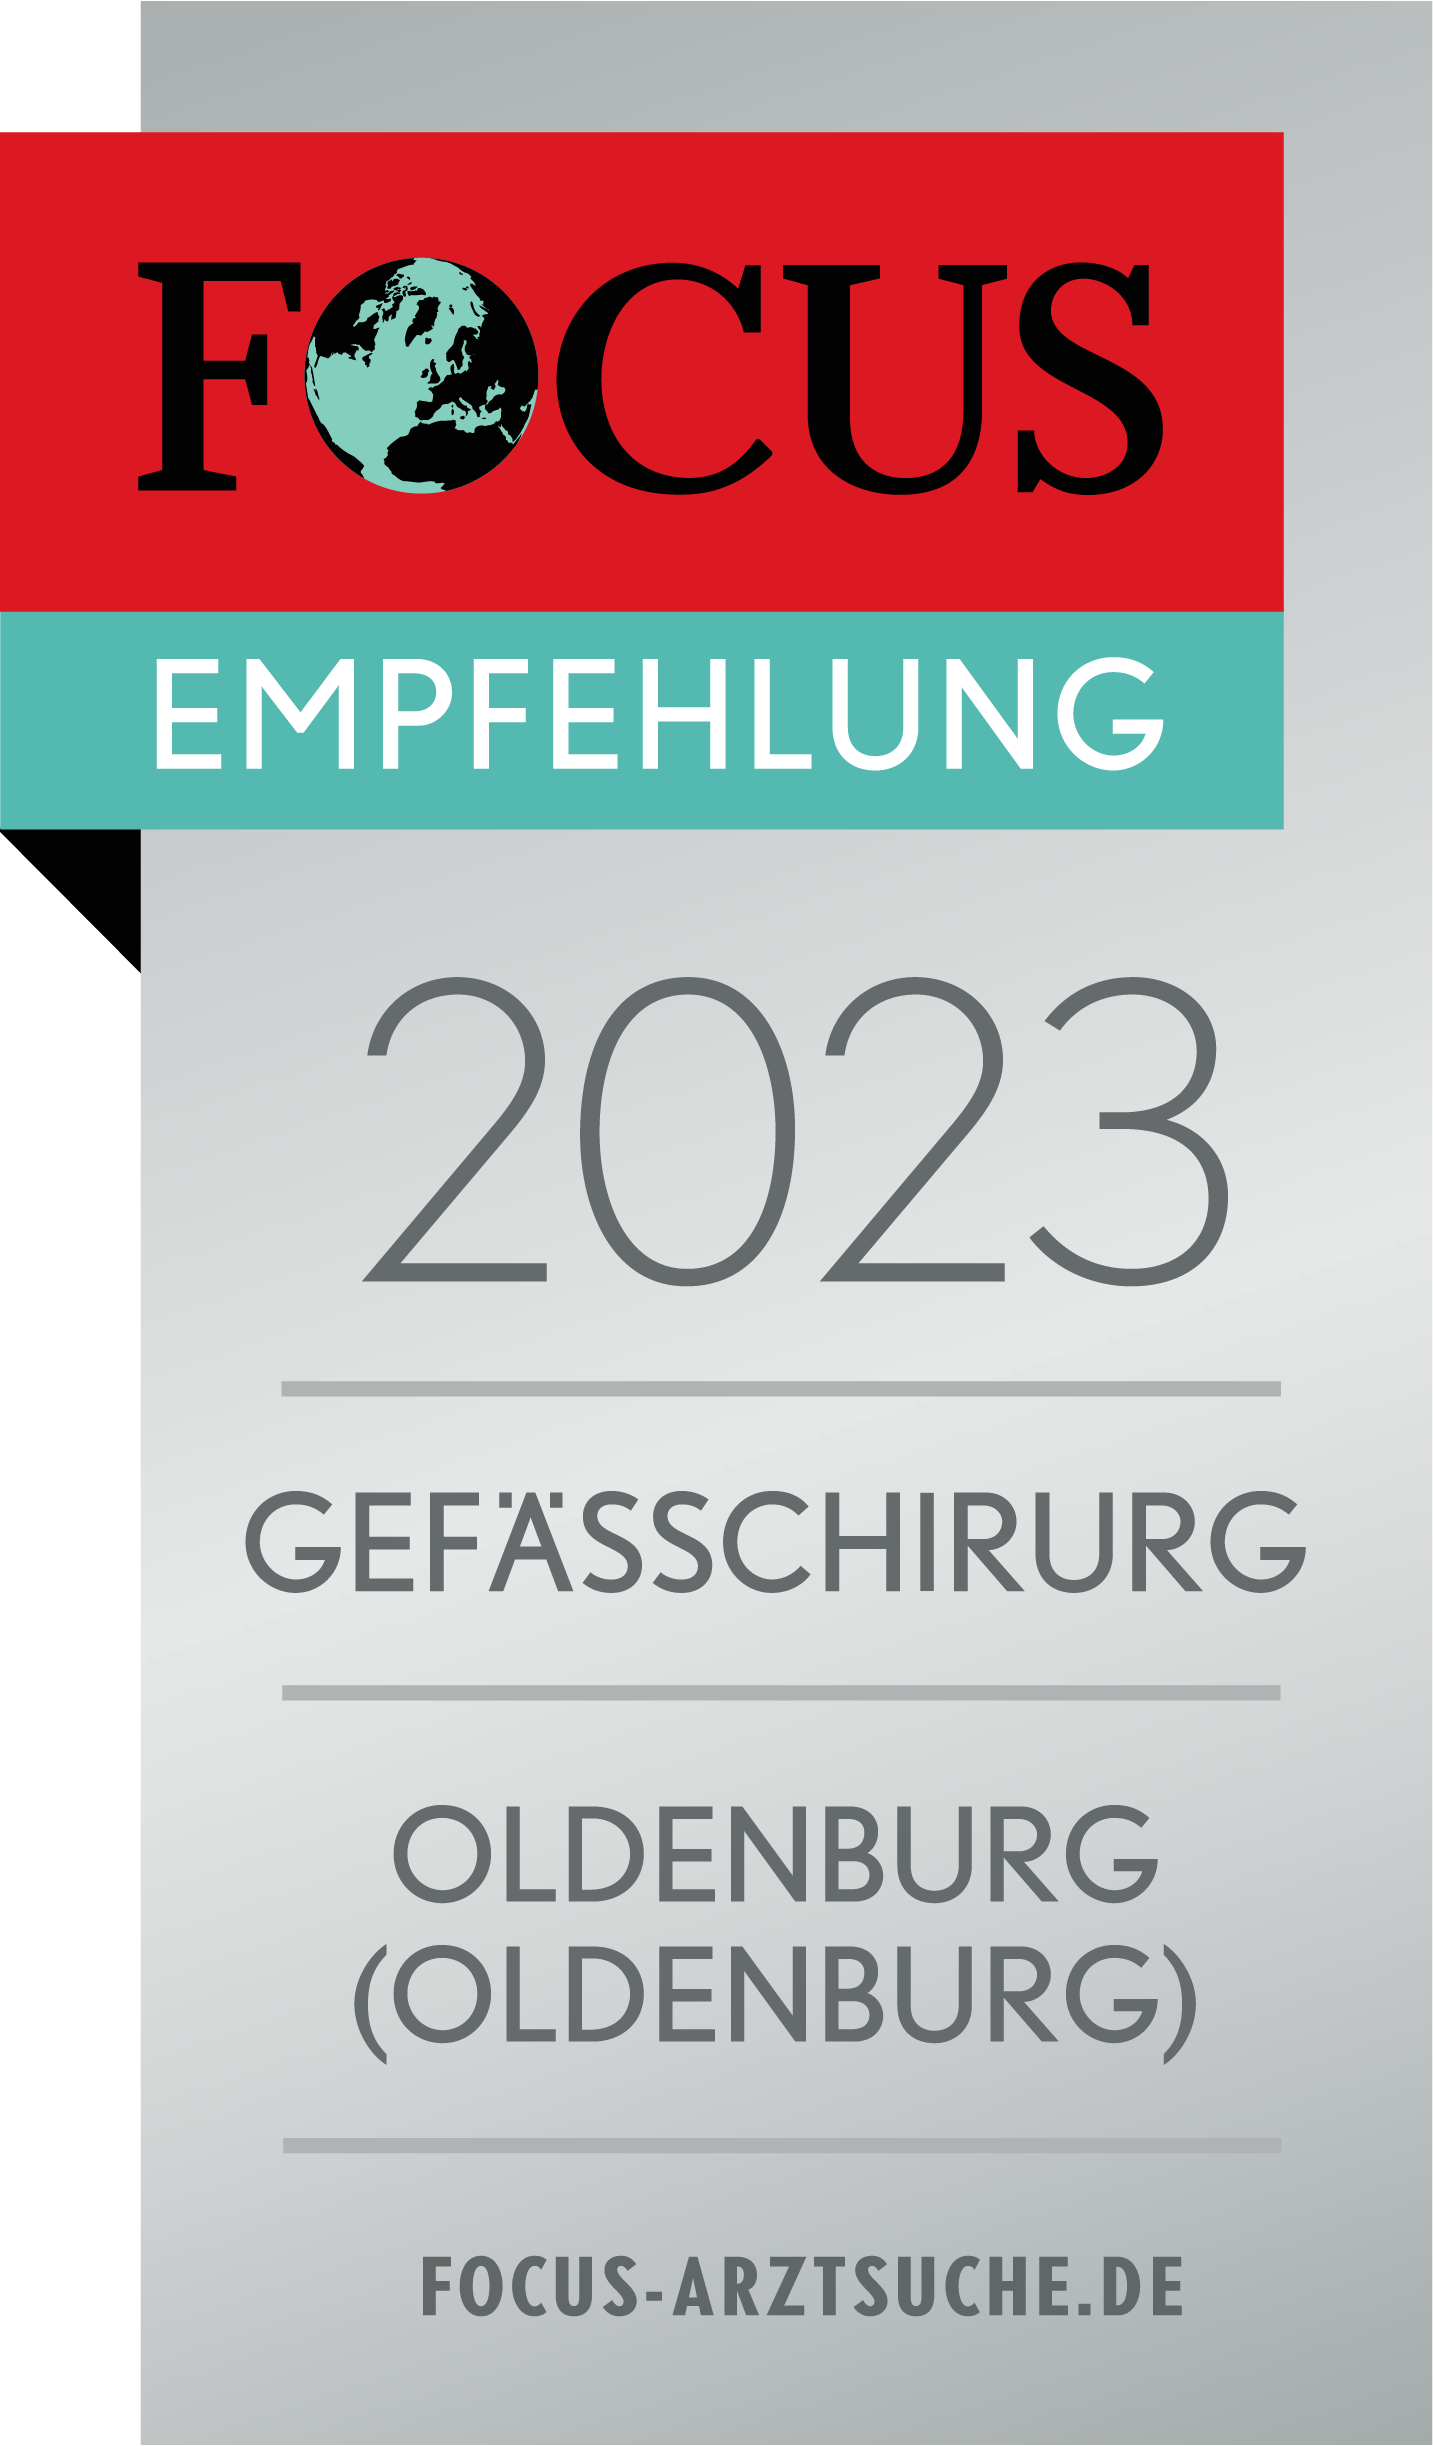 Focus Siegel 2023 Gefäßchirurg Oldenburg Venenzentrum